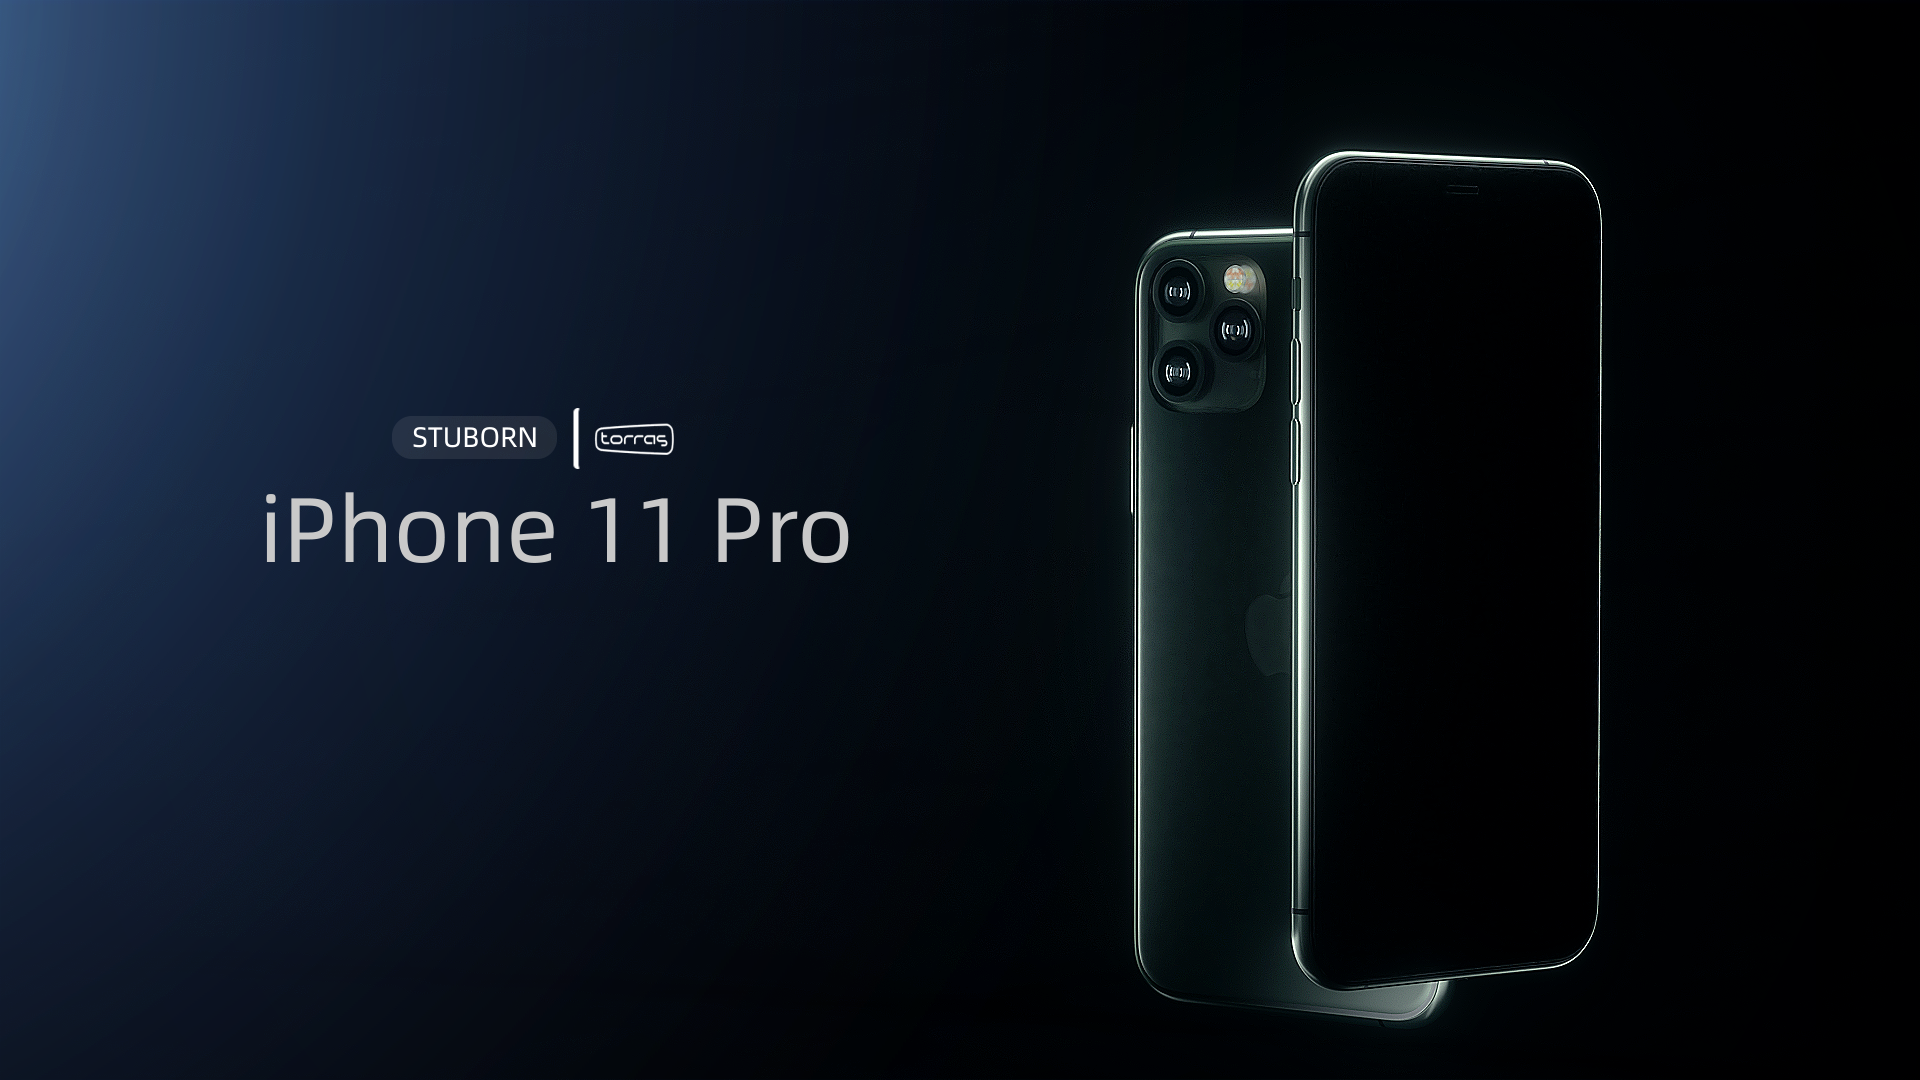 iphone 11 pro 暗夜绿手机产品动画